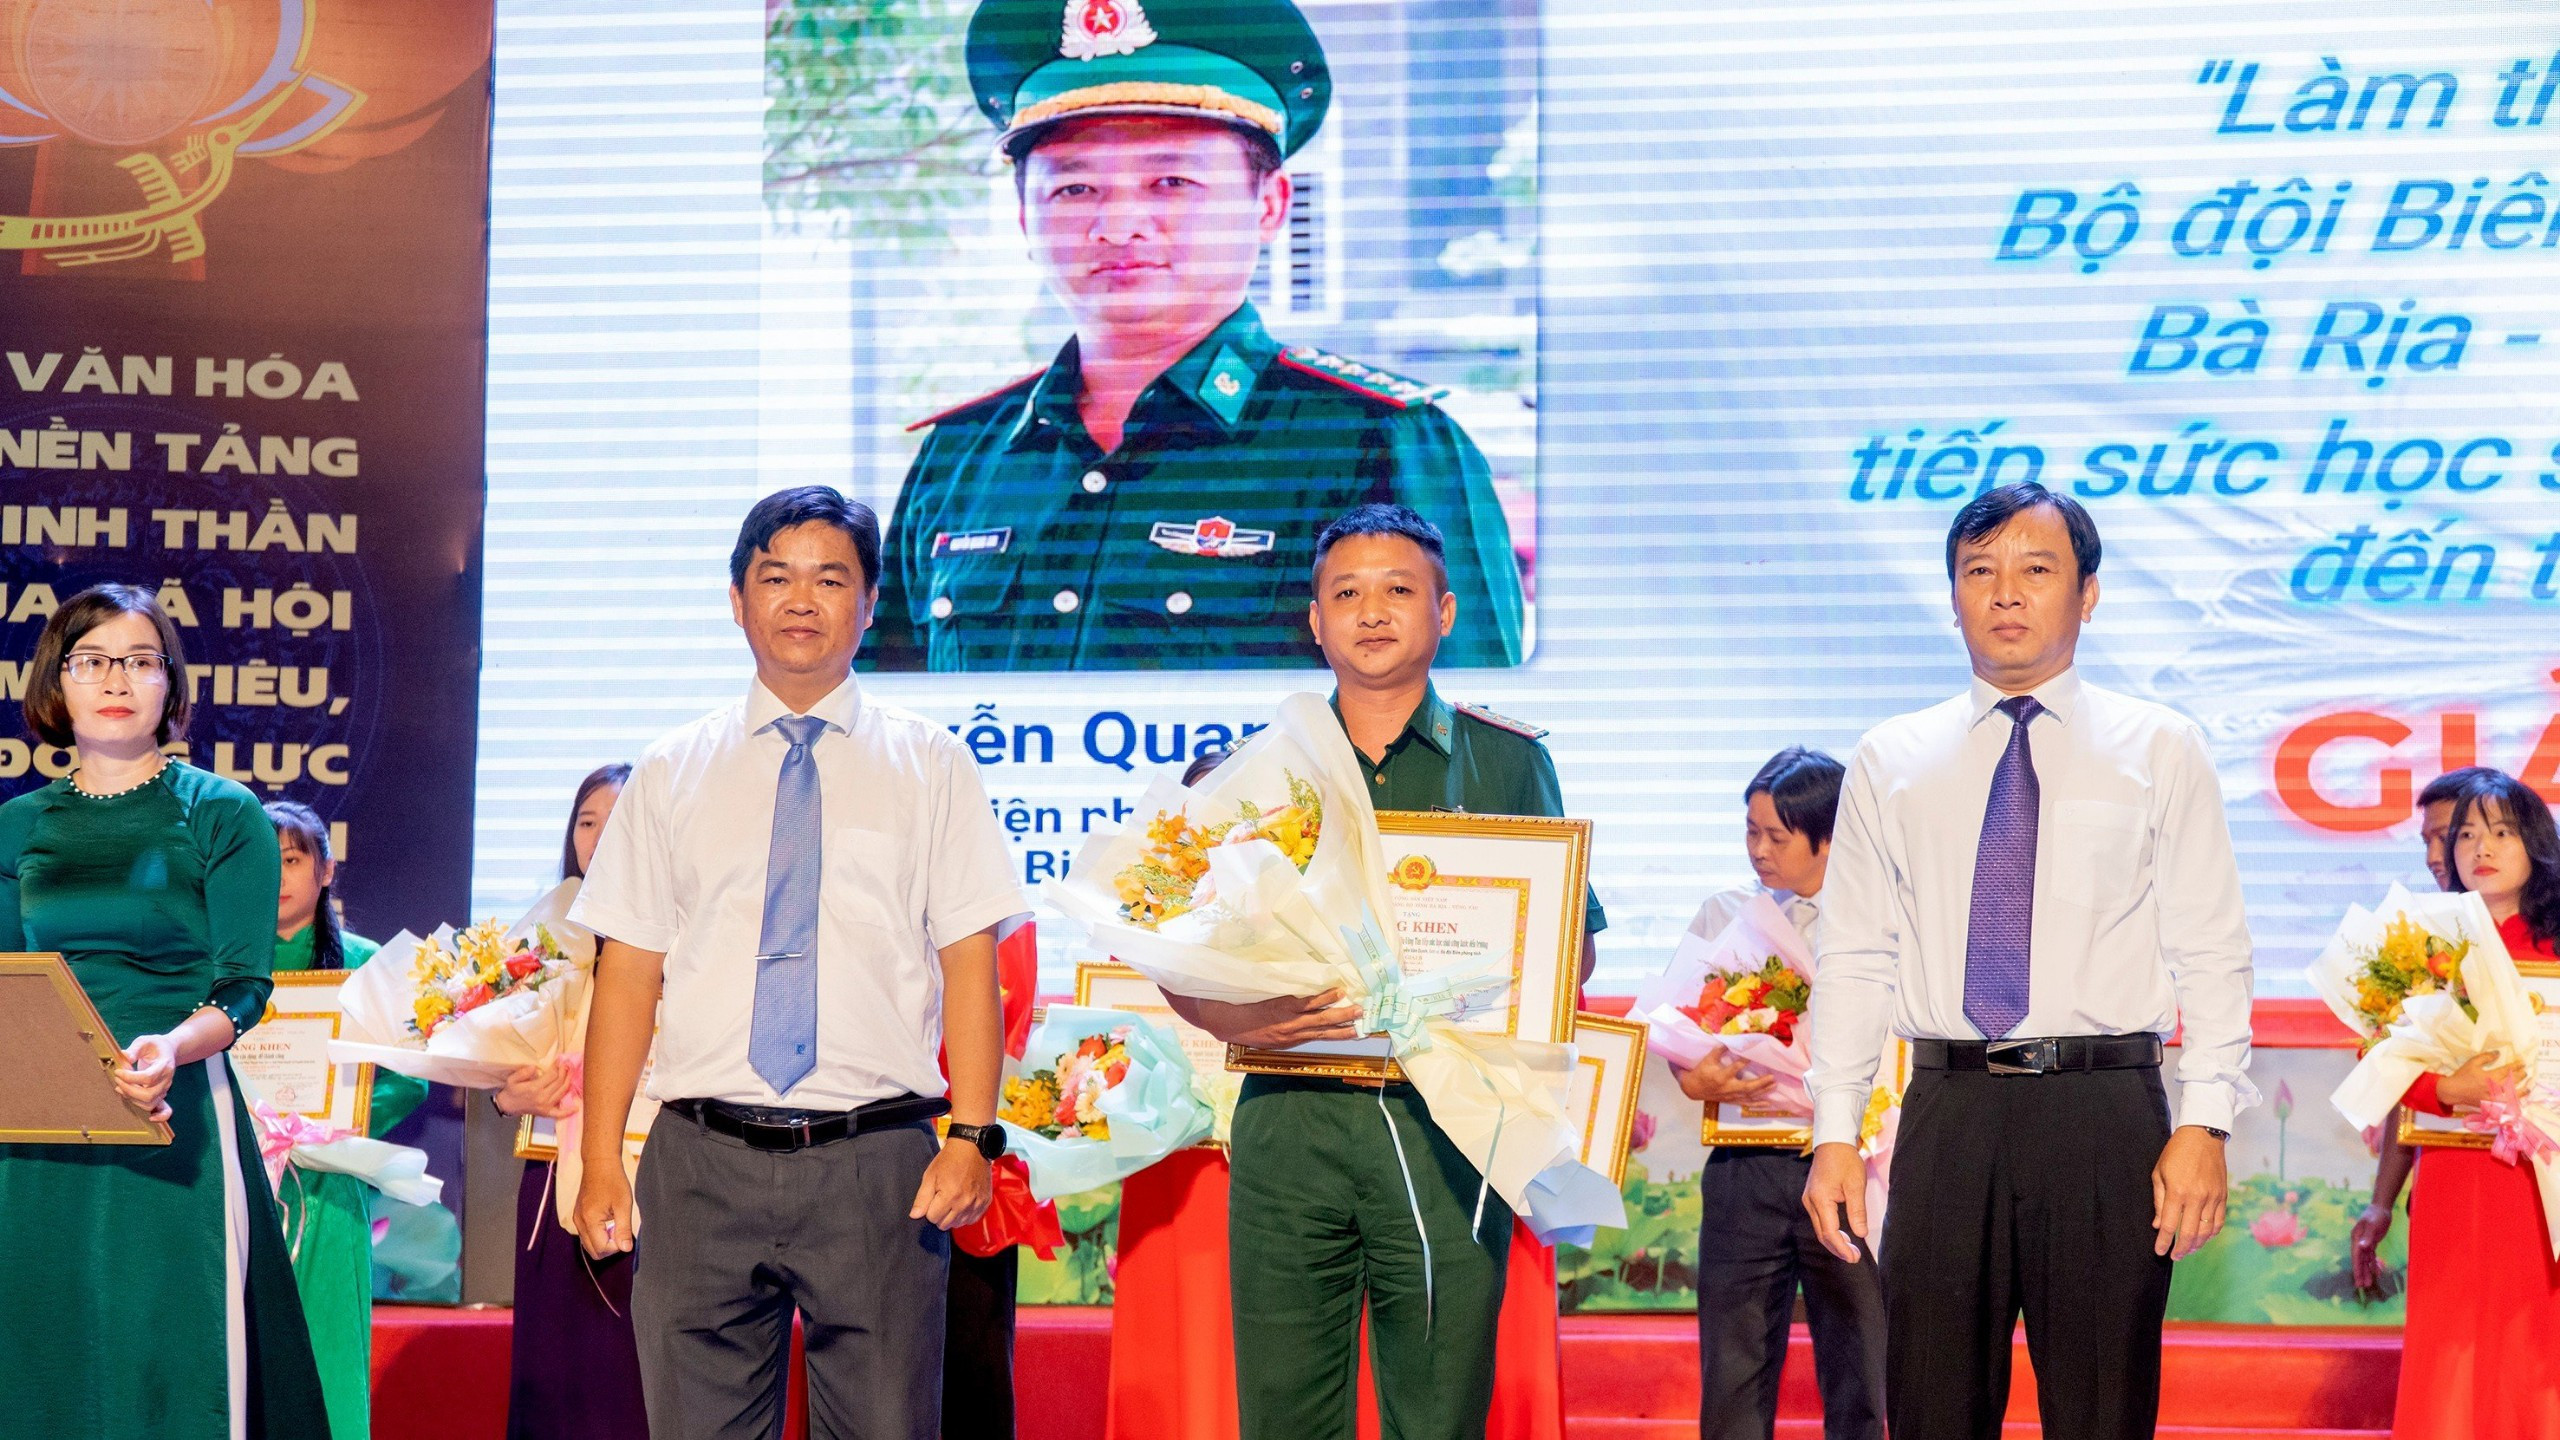 bna_Đại úy Nguyễn Quang Anh, quê gốc Quỳnh Thắng, Quỳnh Lưu (Nghệ An), nhận giải thưởng báo chí, ảnh Mai Thắng.jpg